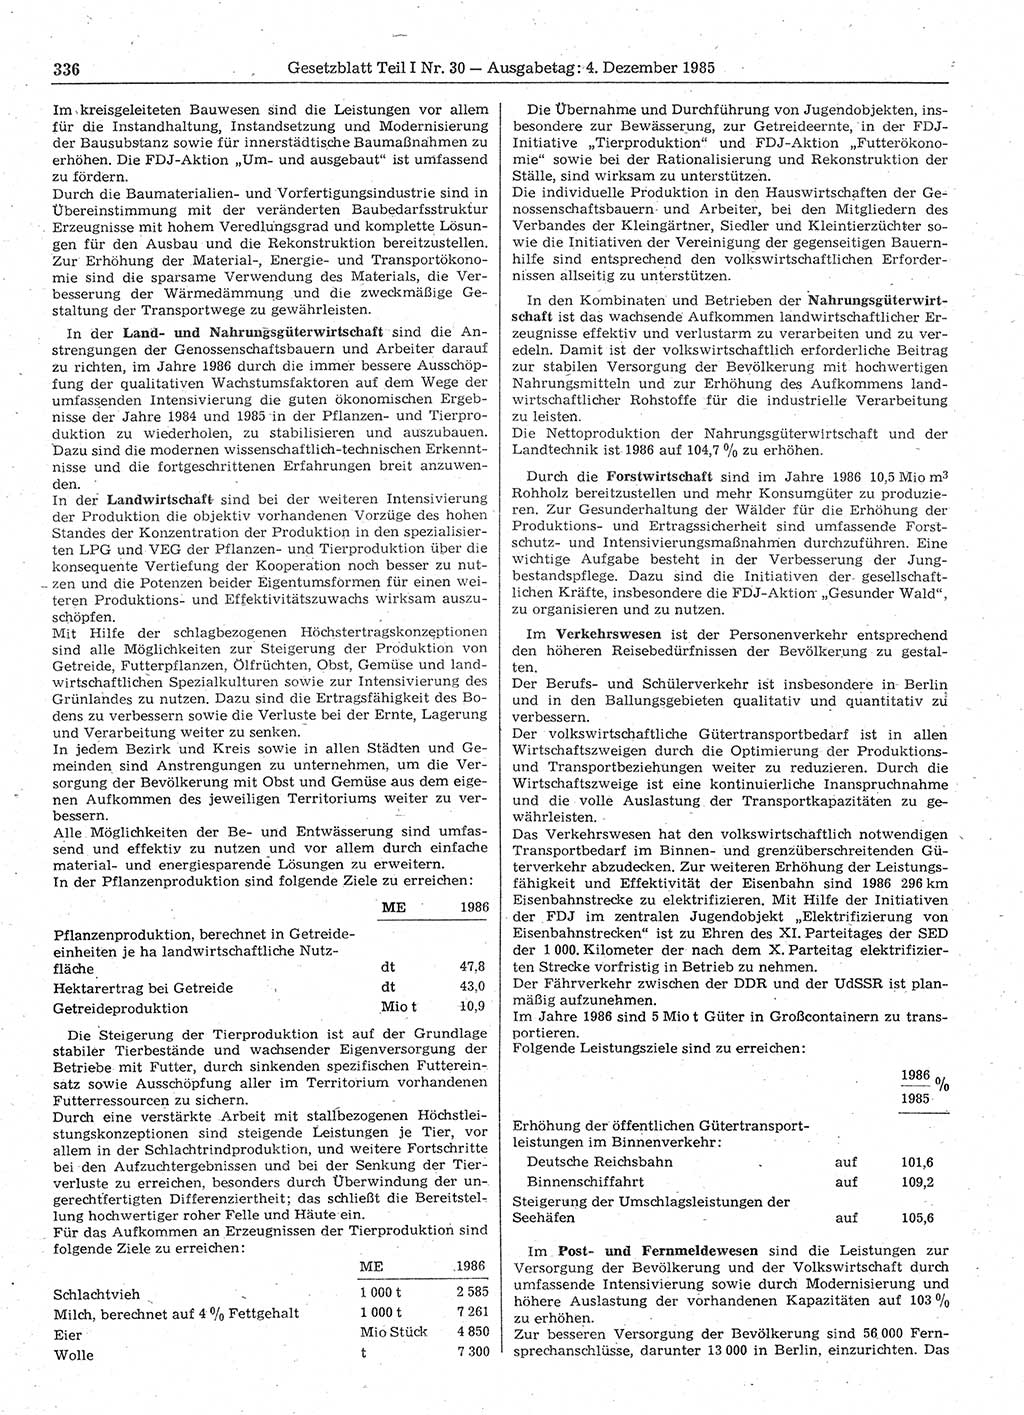 Gesetzblatt (GBl.) der Deutschen Demokratischen Republik (DDR) Teil Ⅰ 1985, Seite 336 (GBl. DDR Ⅰ 1985, S. 336)